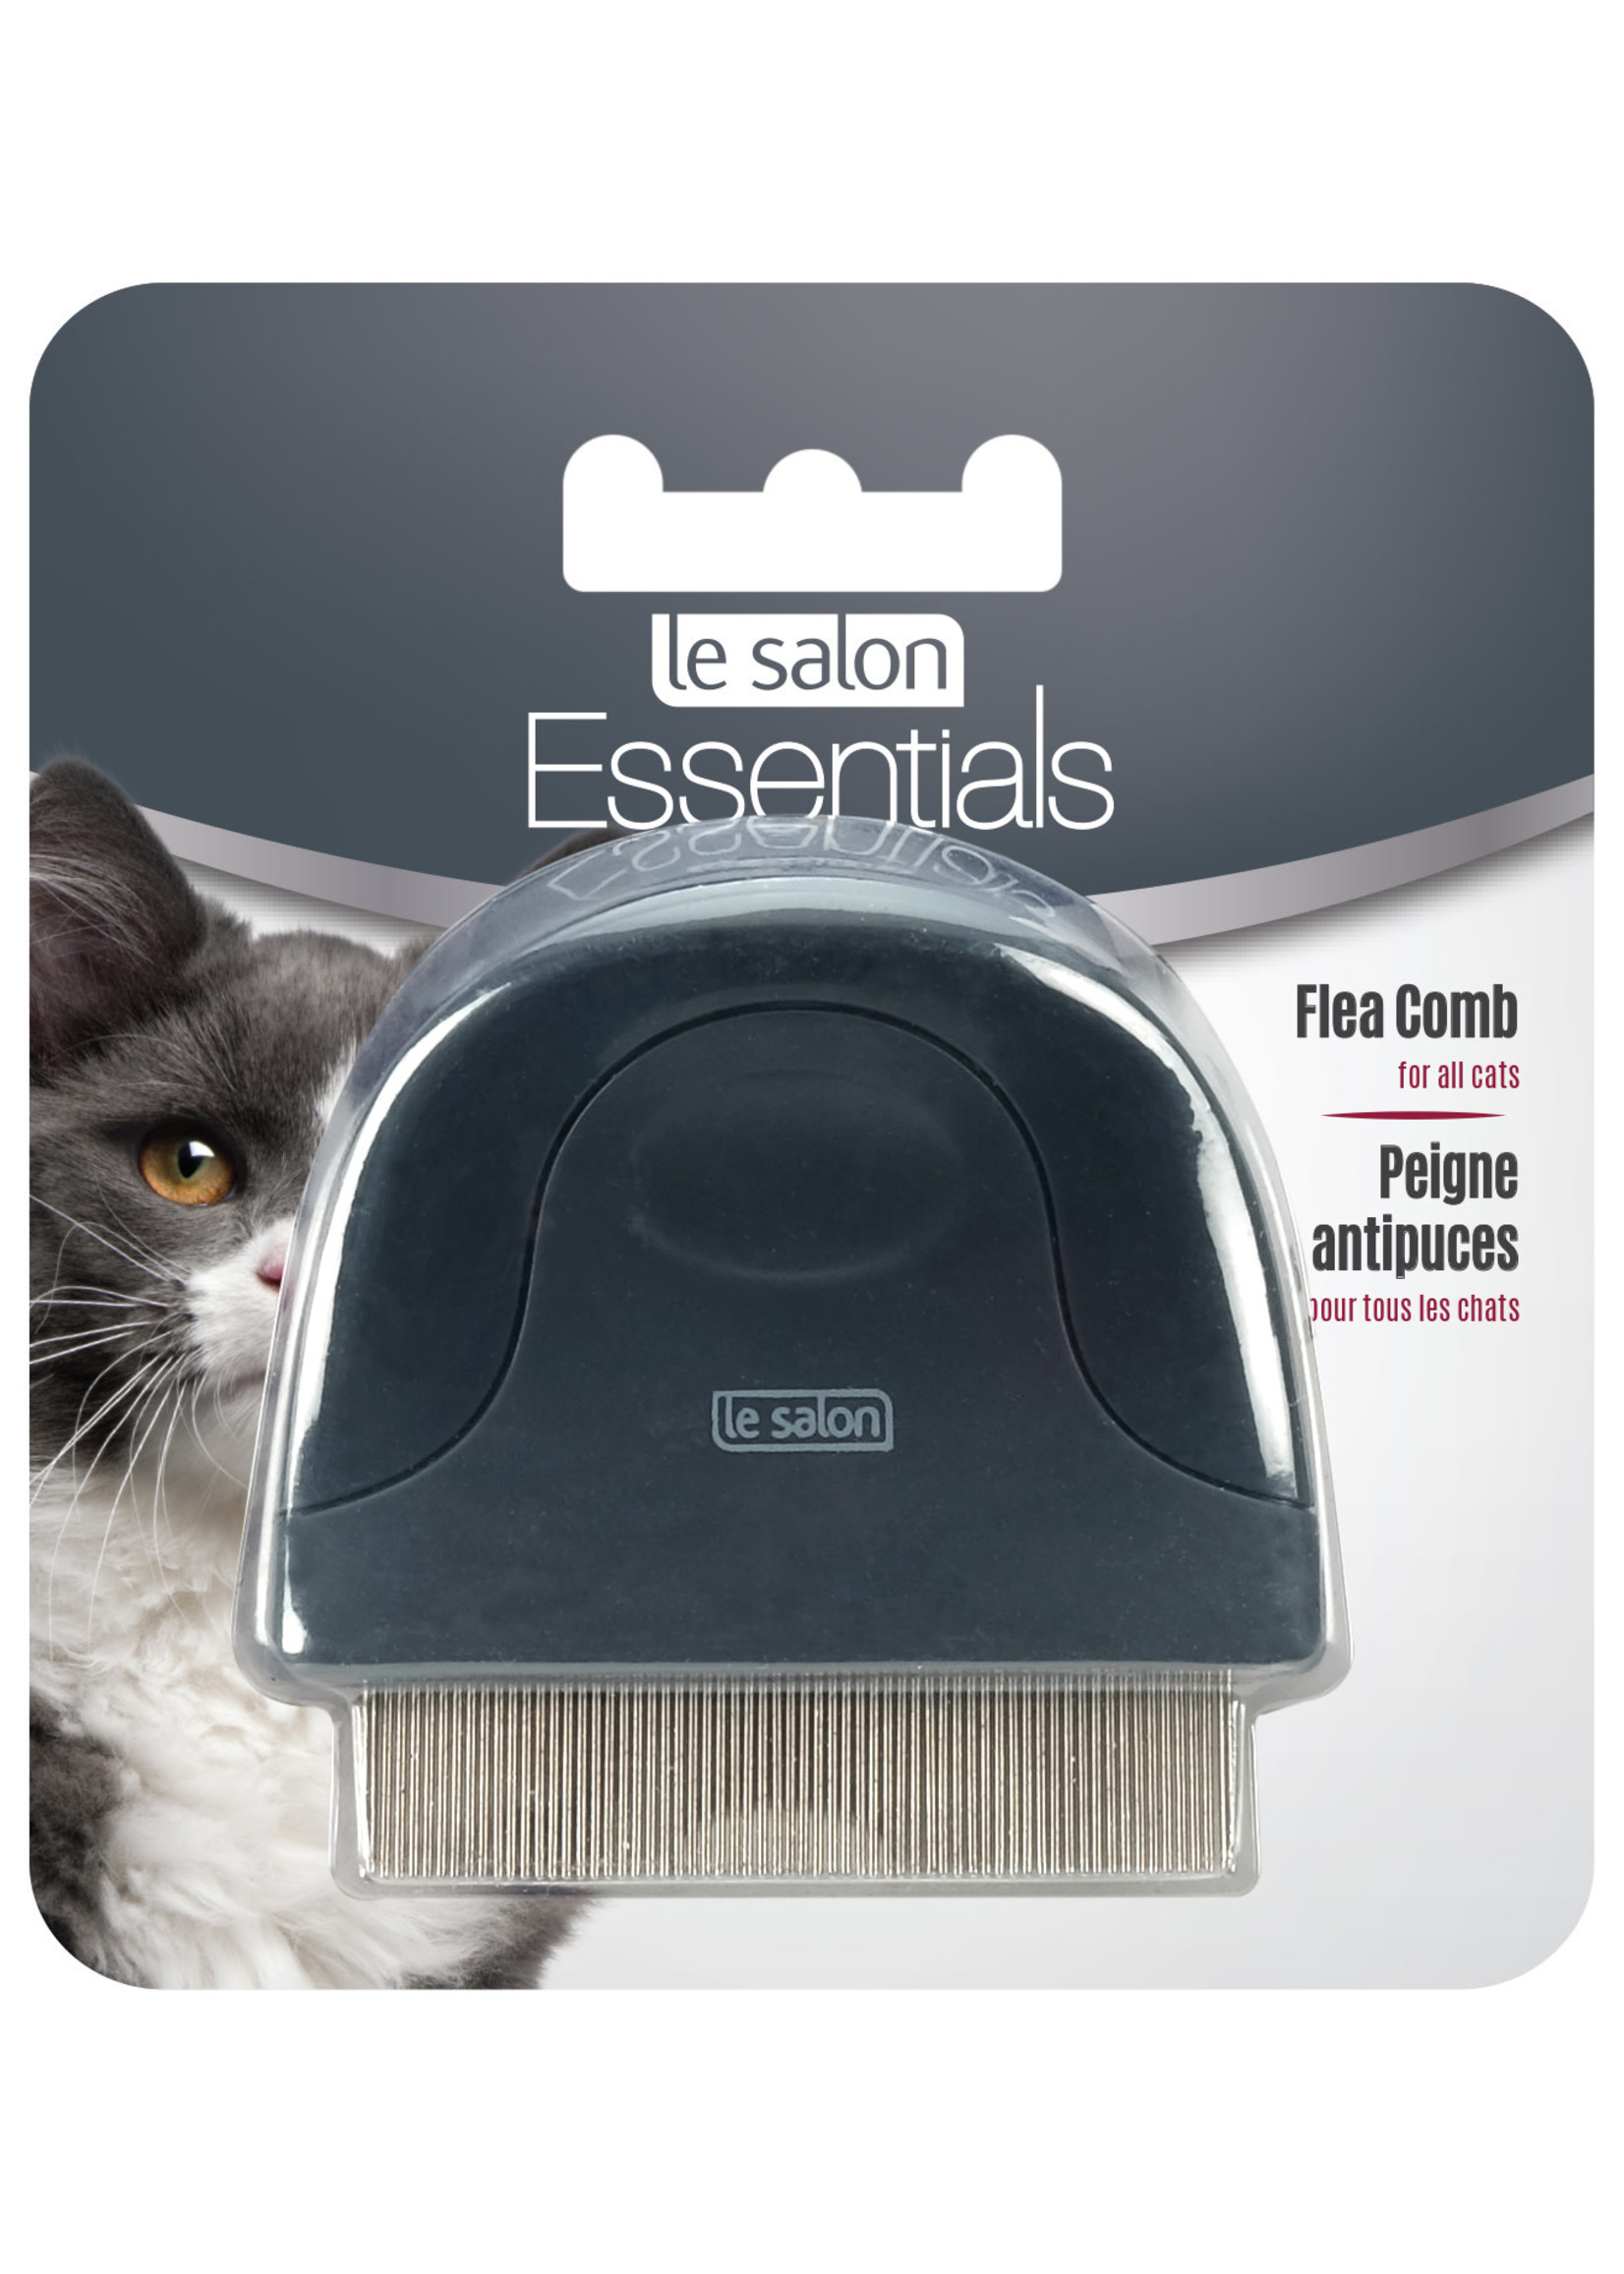 le salon Essentials Flea Comb